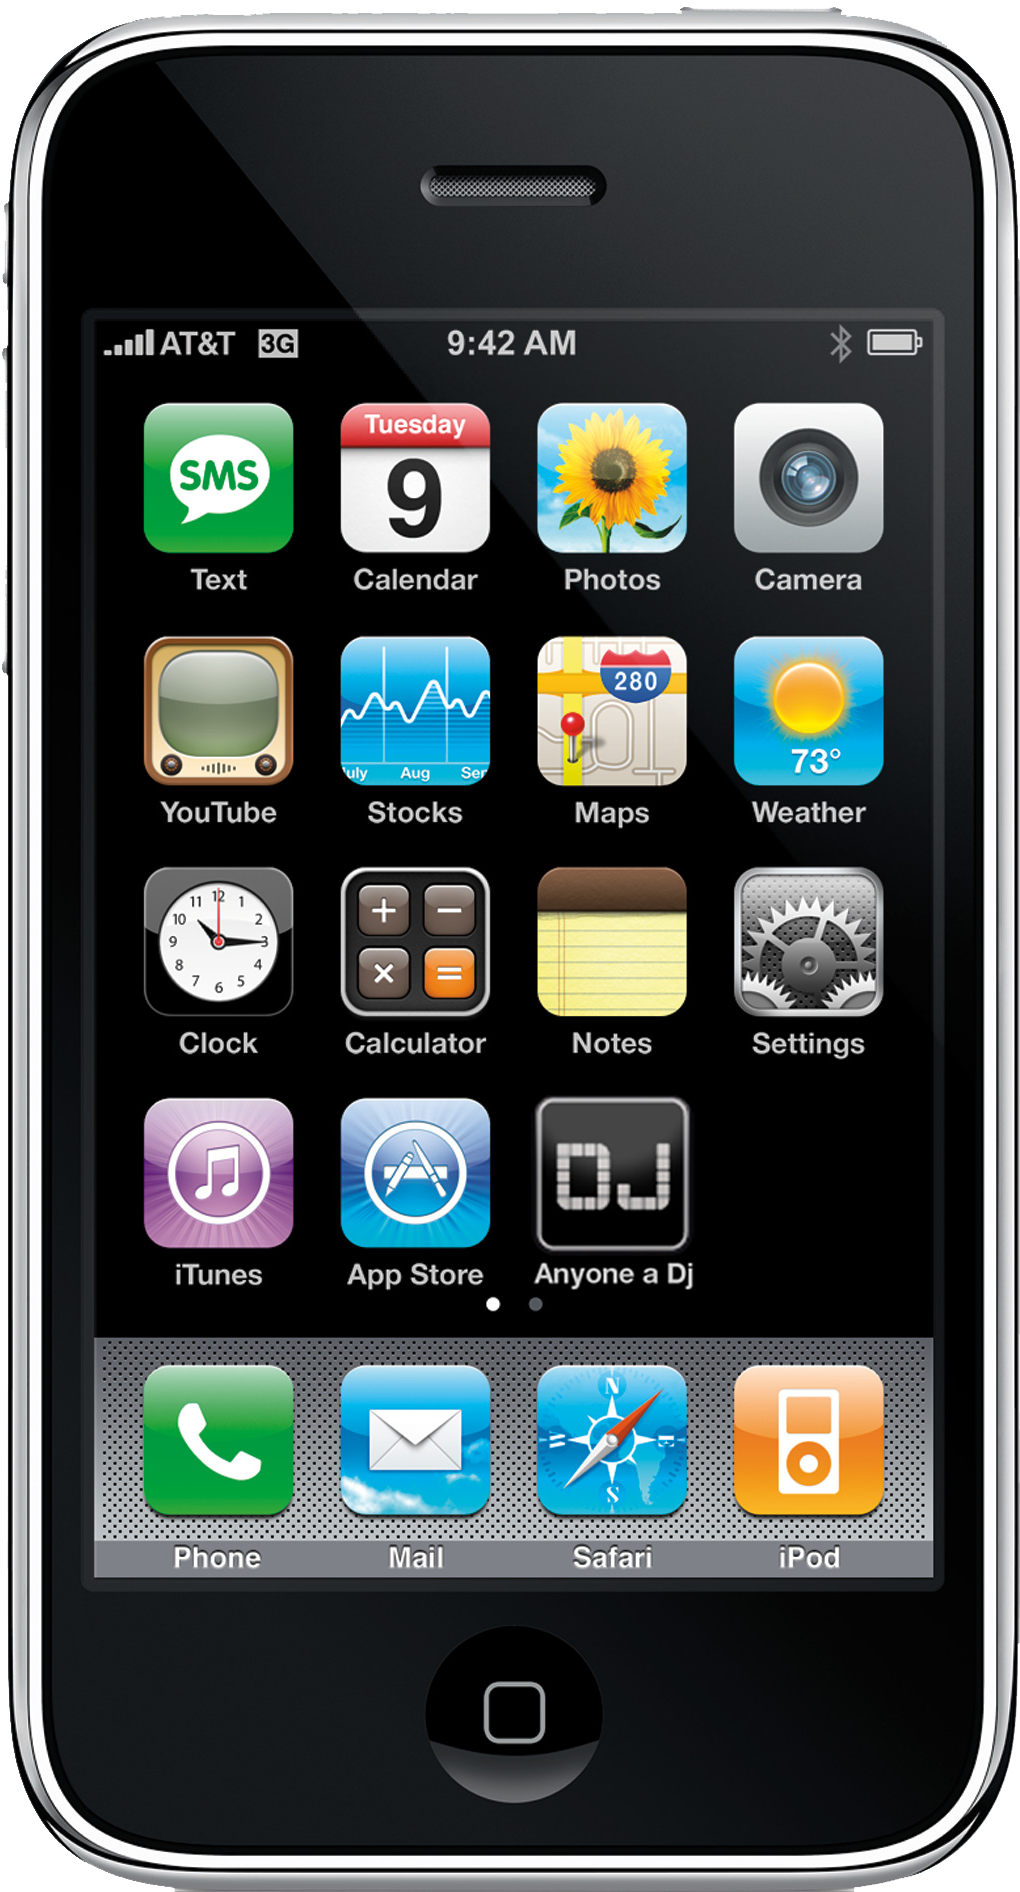 Hình nền iPhone PNG đẹp mắt và chất lượng cao sẽ giúp cho màn hình điện thoại của bạn trở nên độc đáo và ấn tượng hơn. Xem ngay ảnh liên quan để chọn cho mình một bức hình nền yêu thích.